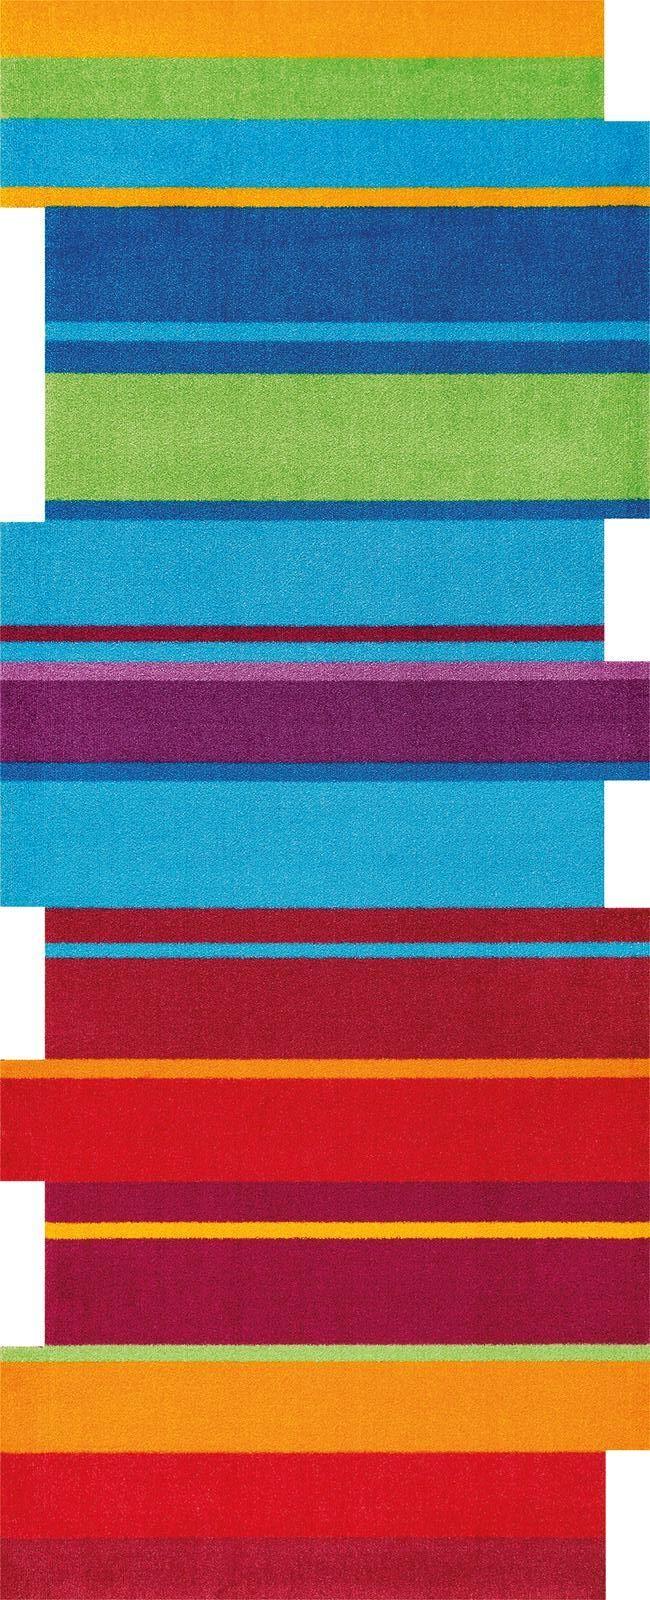 Fußmatte Dancing Steps 087717 80x200 cm Textil - Multicolor, Trend, Textil (80/200cm) - Esposa